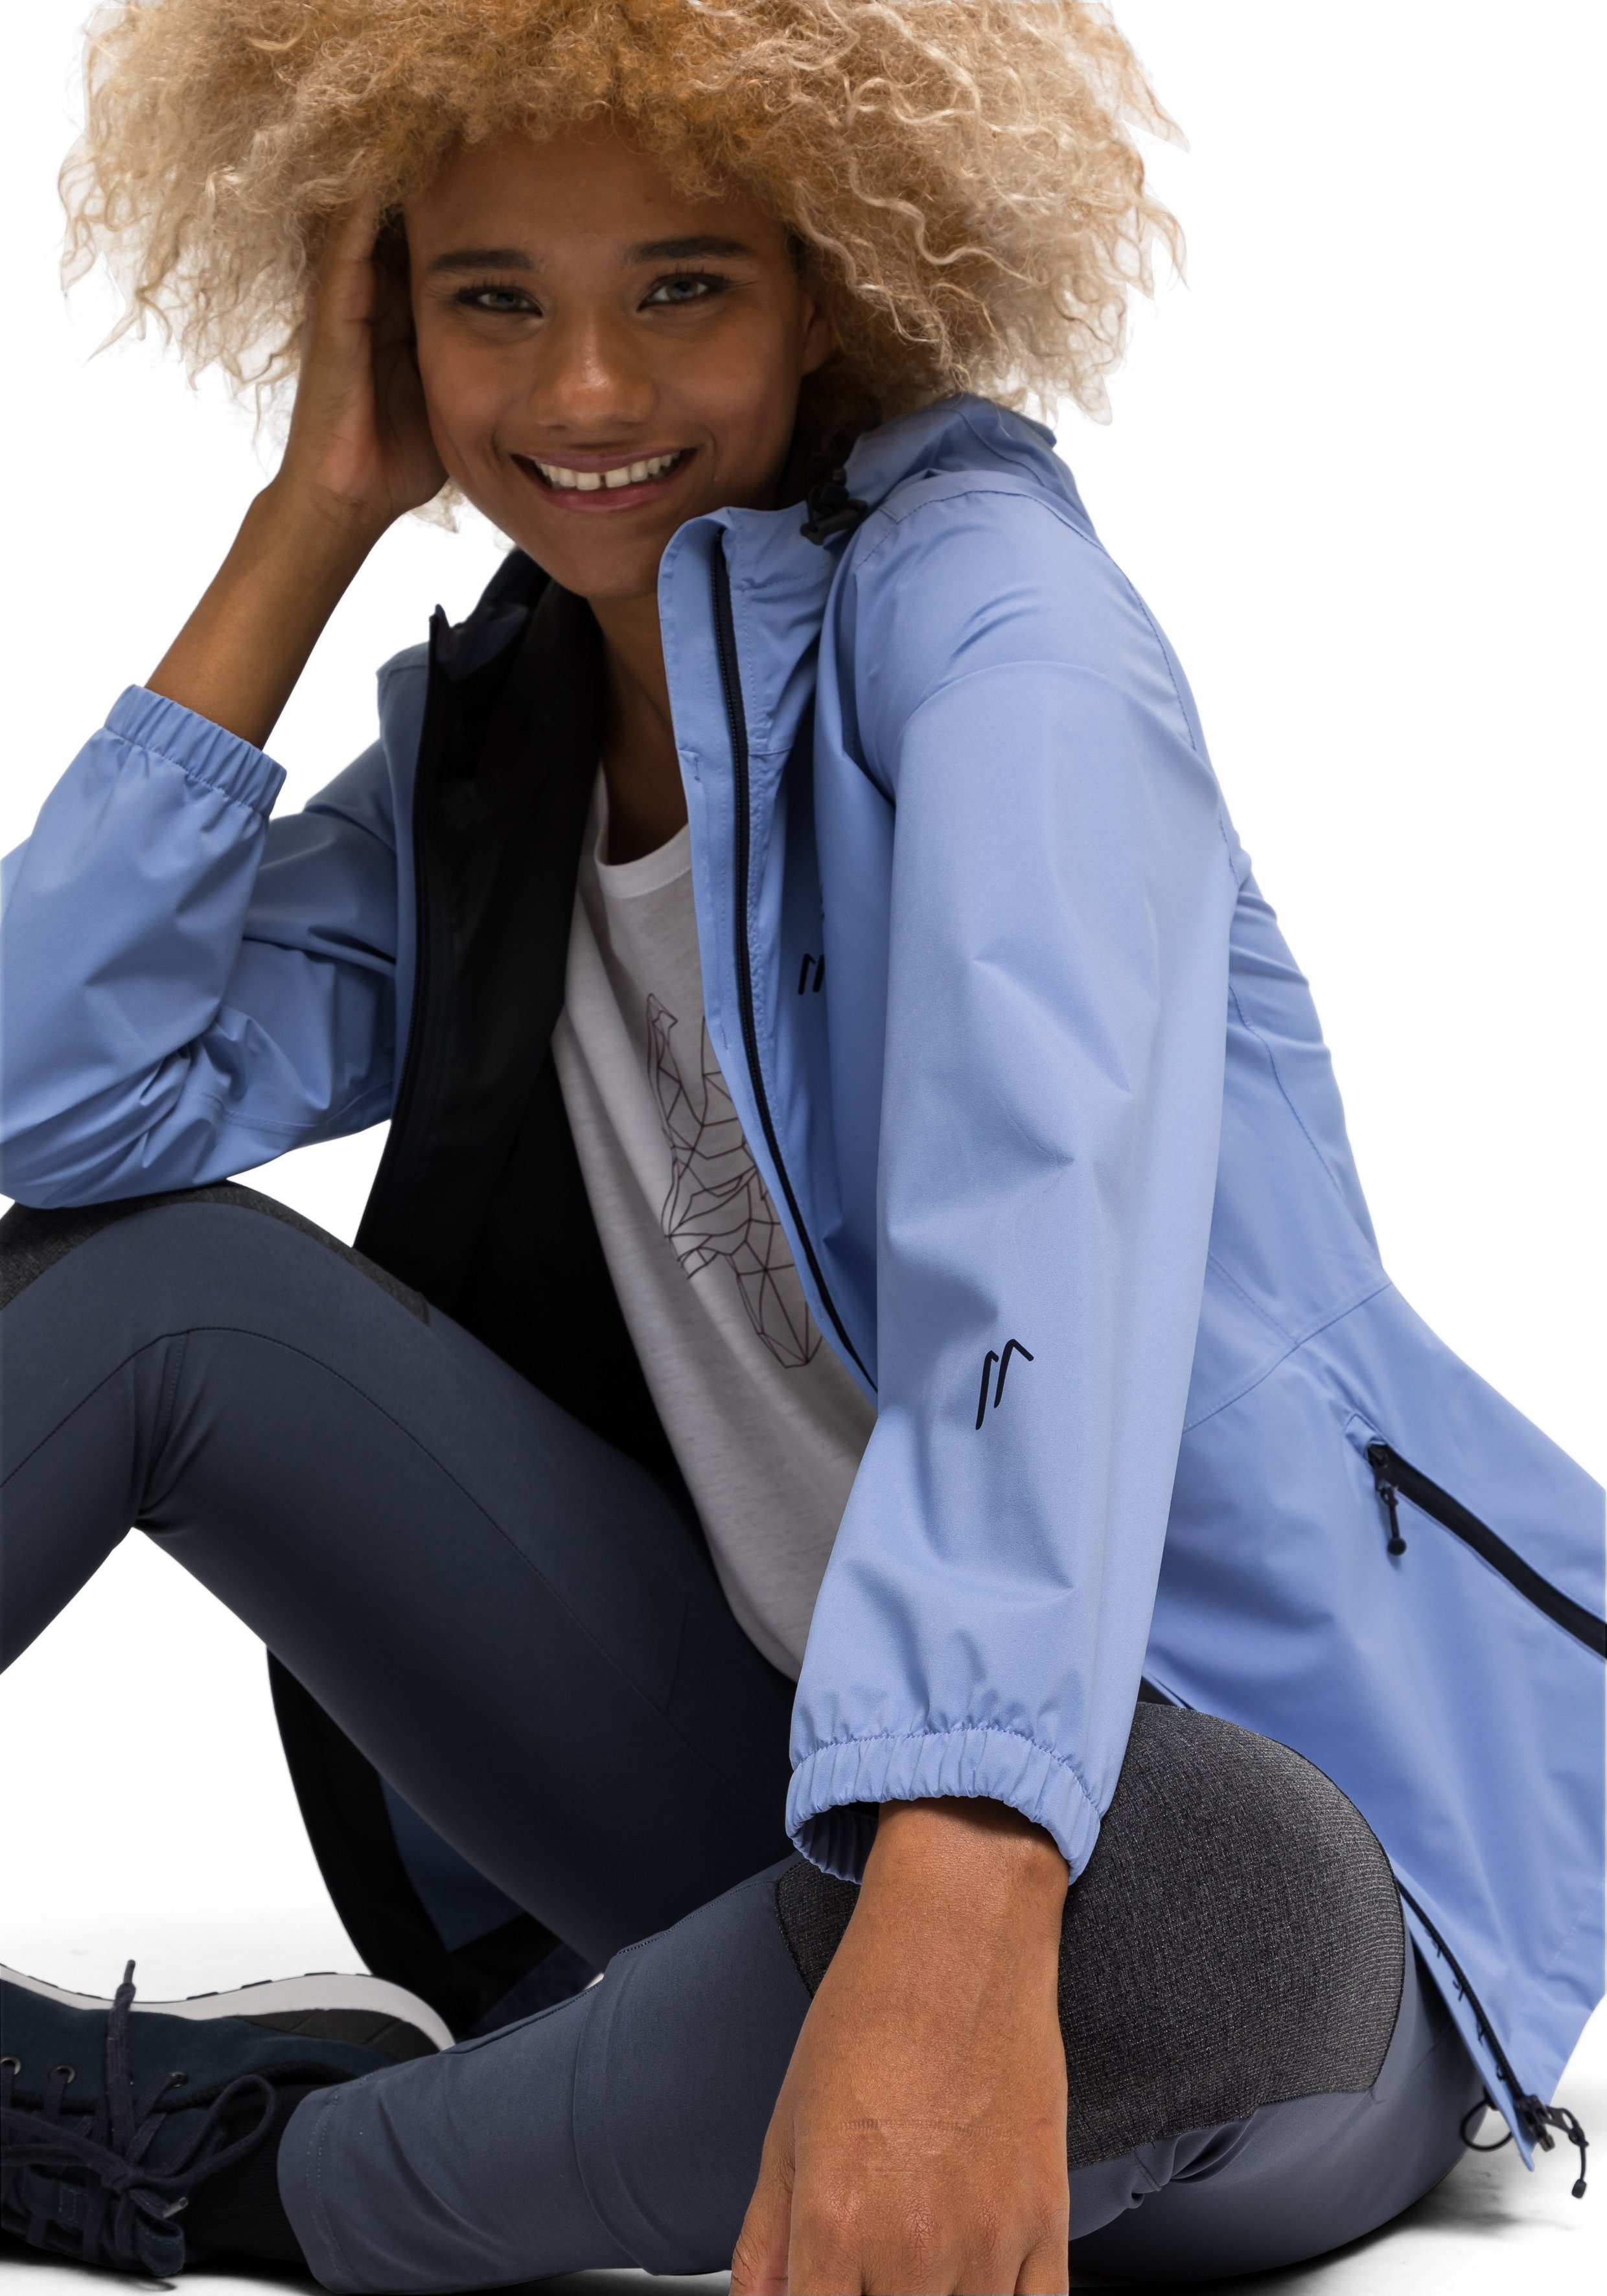 Maier Sports Funktionsjacke Tind Eco Wanderungen Minimalistische 2,5-Lagen-Jacke für Touren W und aquablau